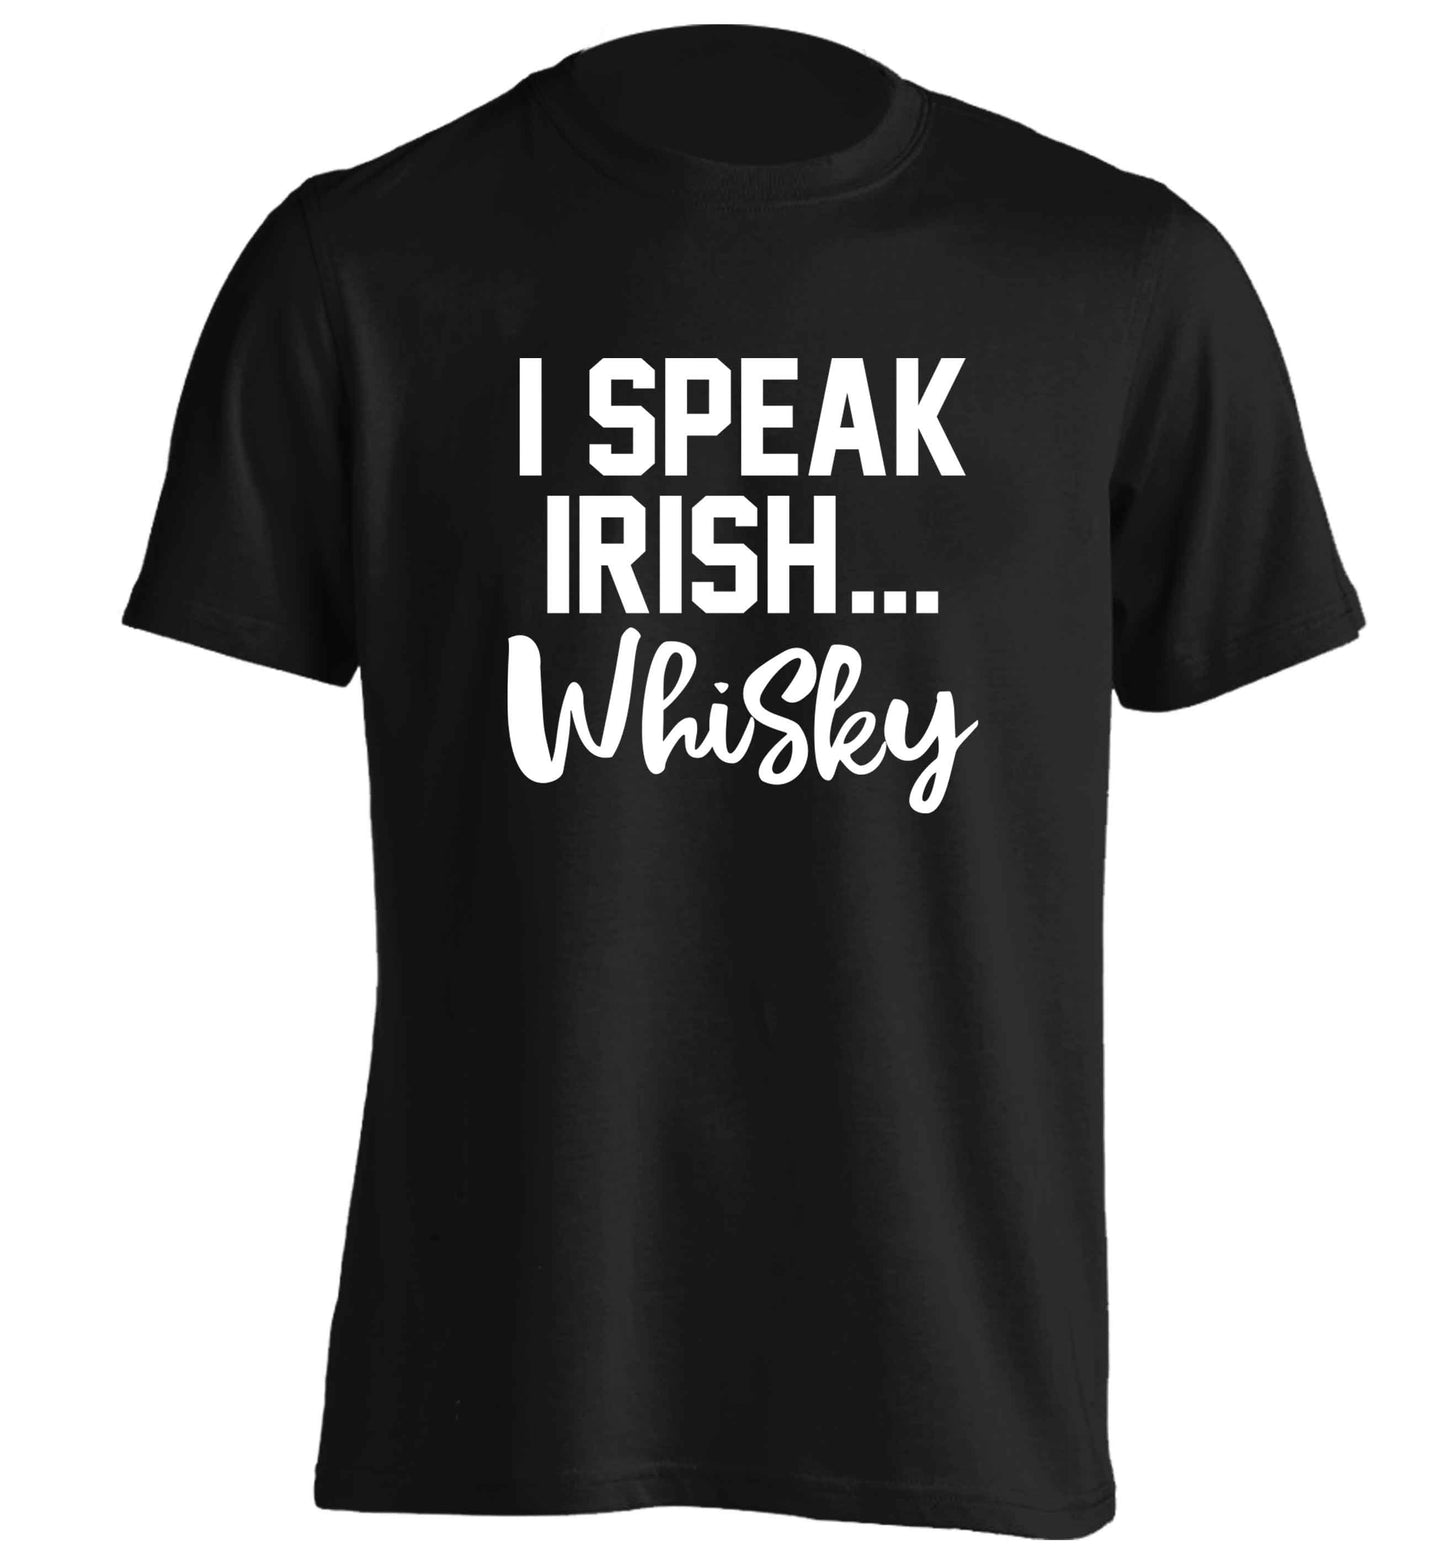 I speak Irish whisky adults unisex black Tshirt 2XL